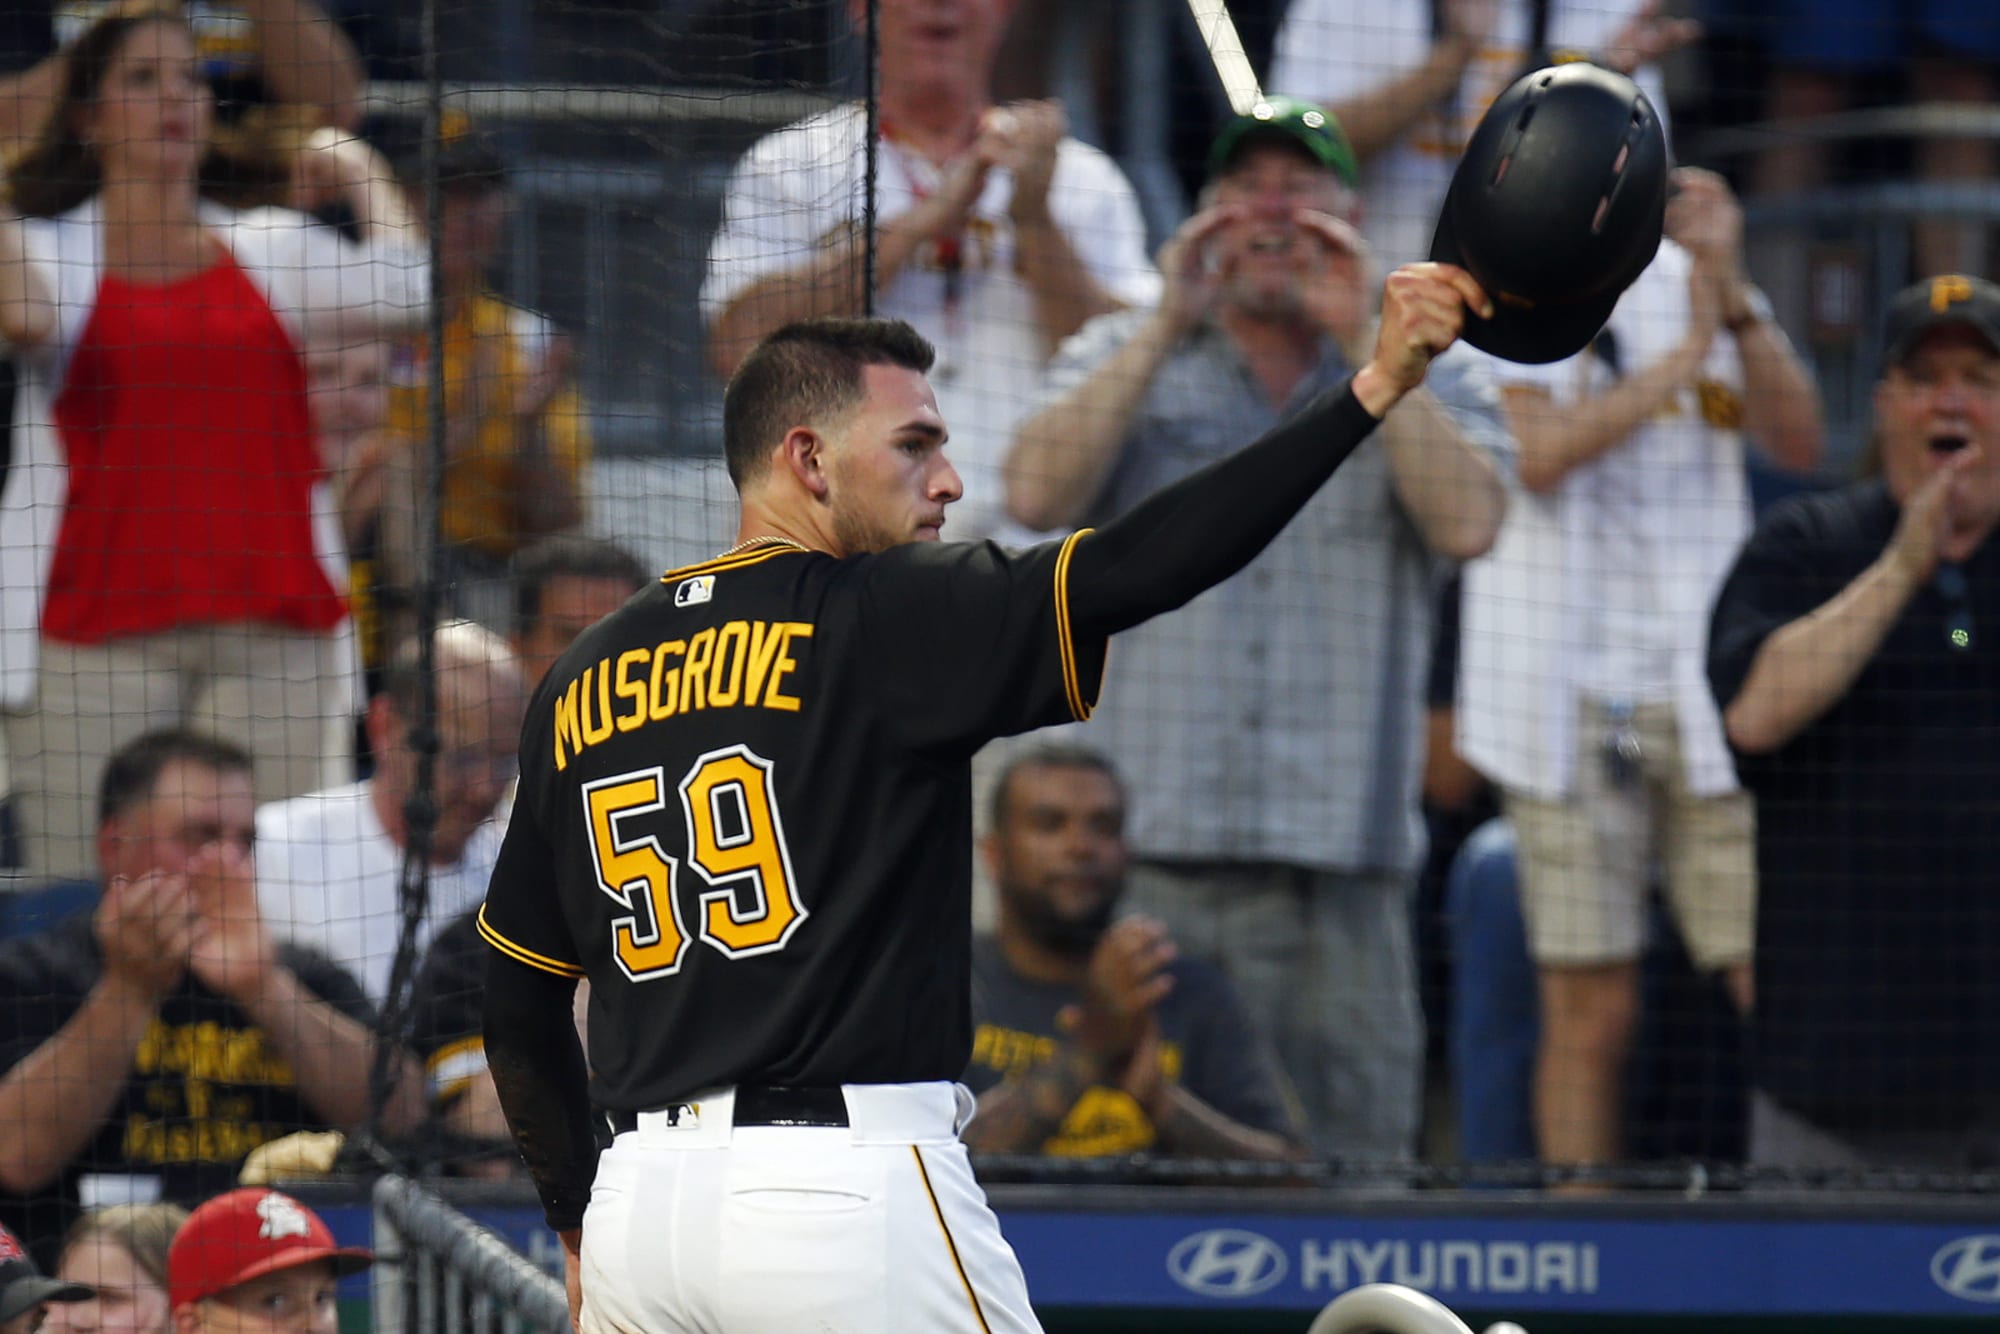 MLB Team Roundup: Pittsburgh Pirates